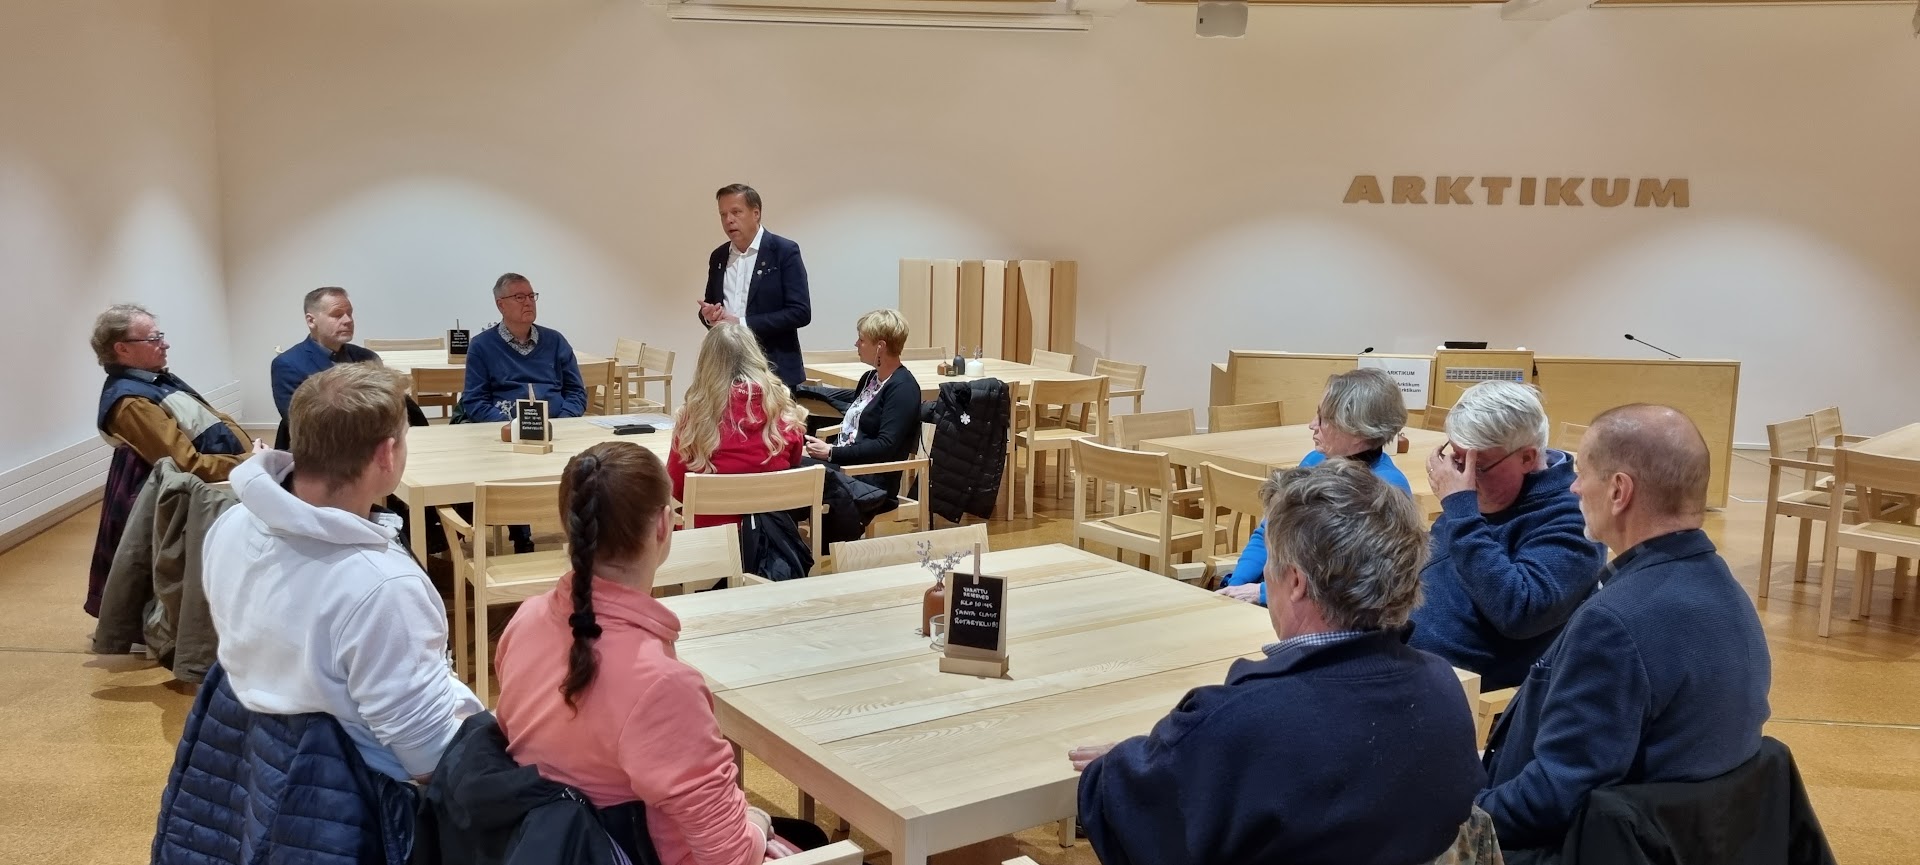 Kuvernööri Petri Keränen puhumassa Rovaniemen rotariklubien lounastilaisuudessa.